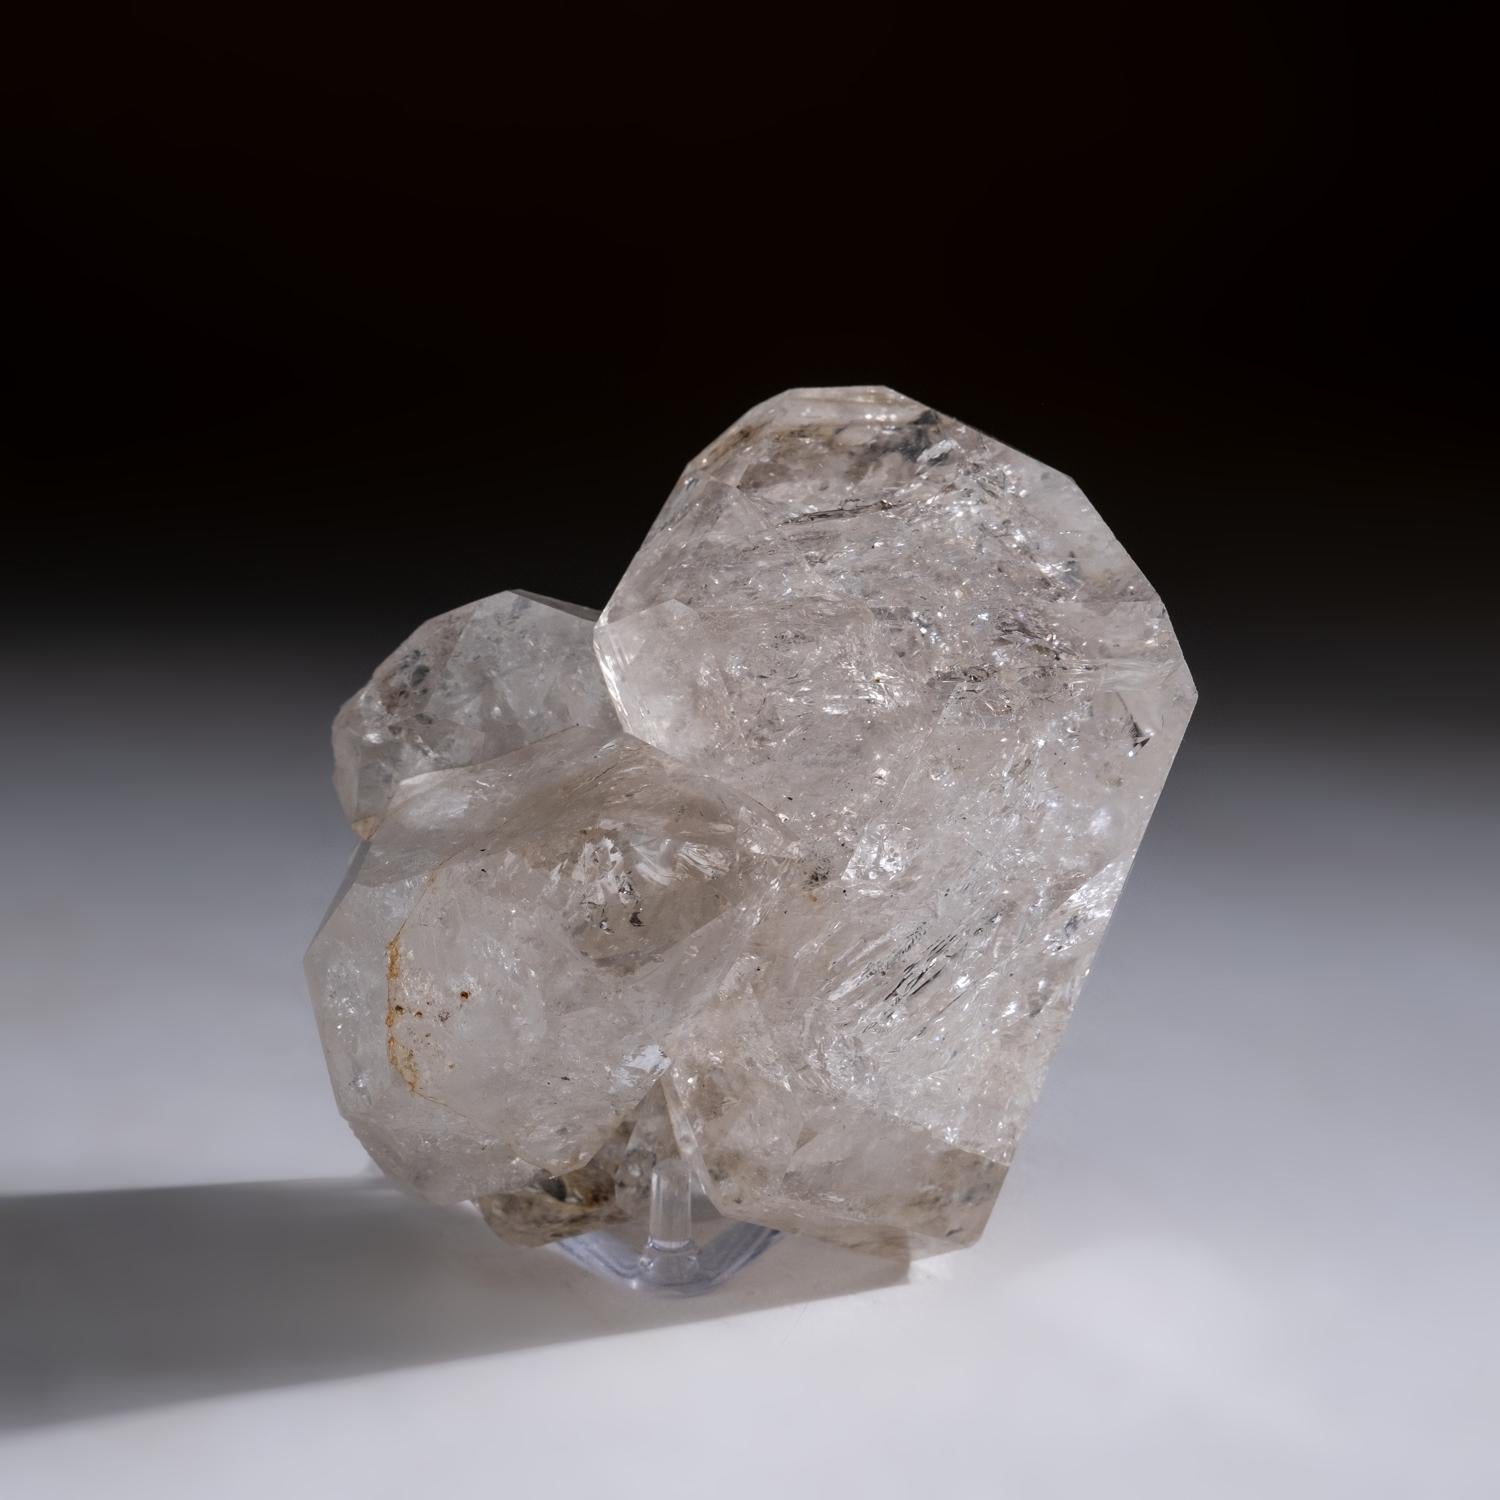 Zweifach endständige, gestapelte Kristalle aus Herkimer-Quarz aus Herkimer County, New York. Dieses ästhetische Exemplar, durchscheinend bis transparent, mit 3 diamantförmigen Clustern, ist in tadellosem Zustand. Dieses Stück hat eine große